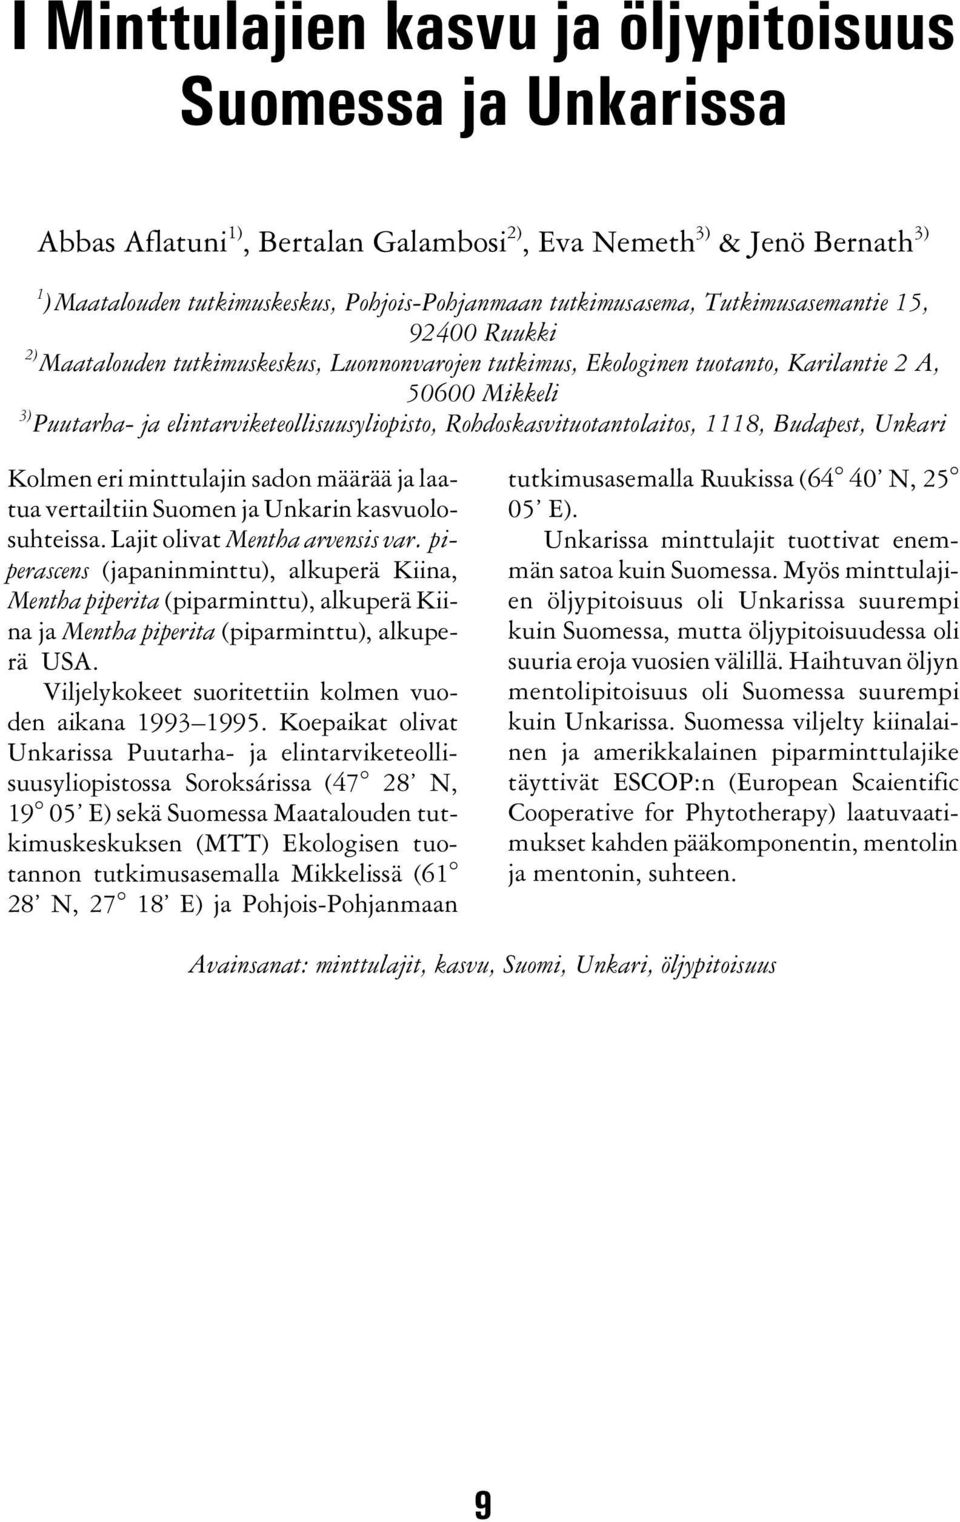 Rohdoskasvituotantolaitos, 1118, Budapest, Unkari Kolmen eri minttulajin sadon määrää ja laatua vertailtiin Suomen ja Unkarin kasvuolosuhteissa. Lajit olivat Mentha arvensis var.